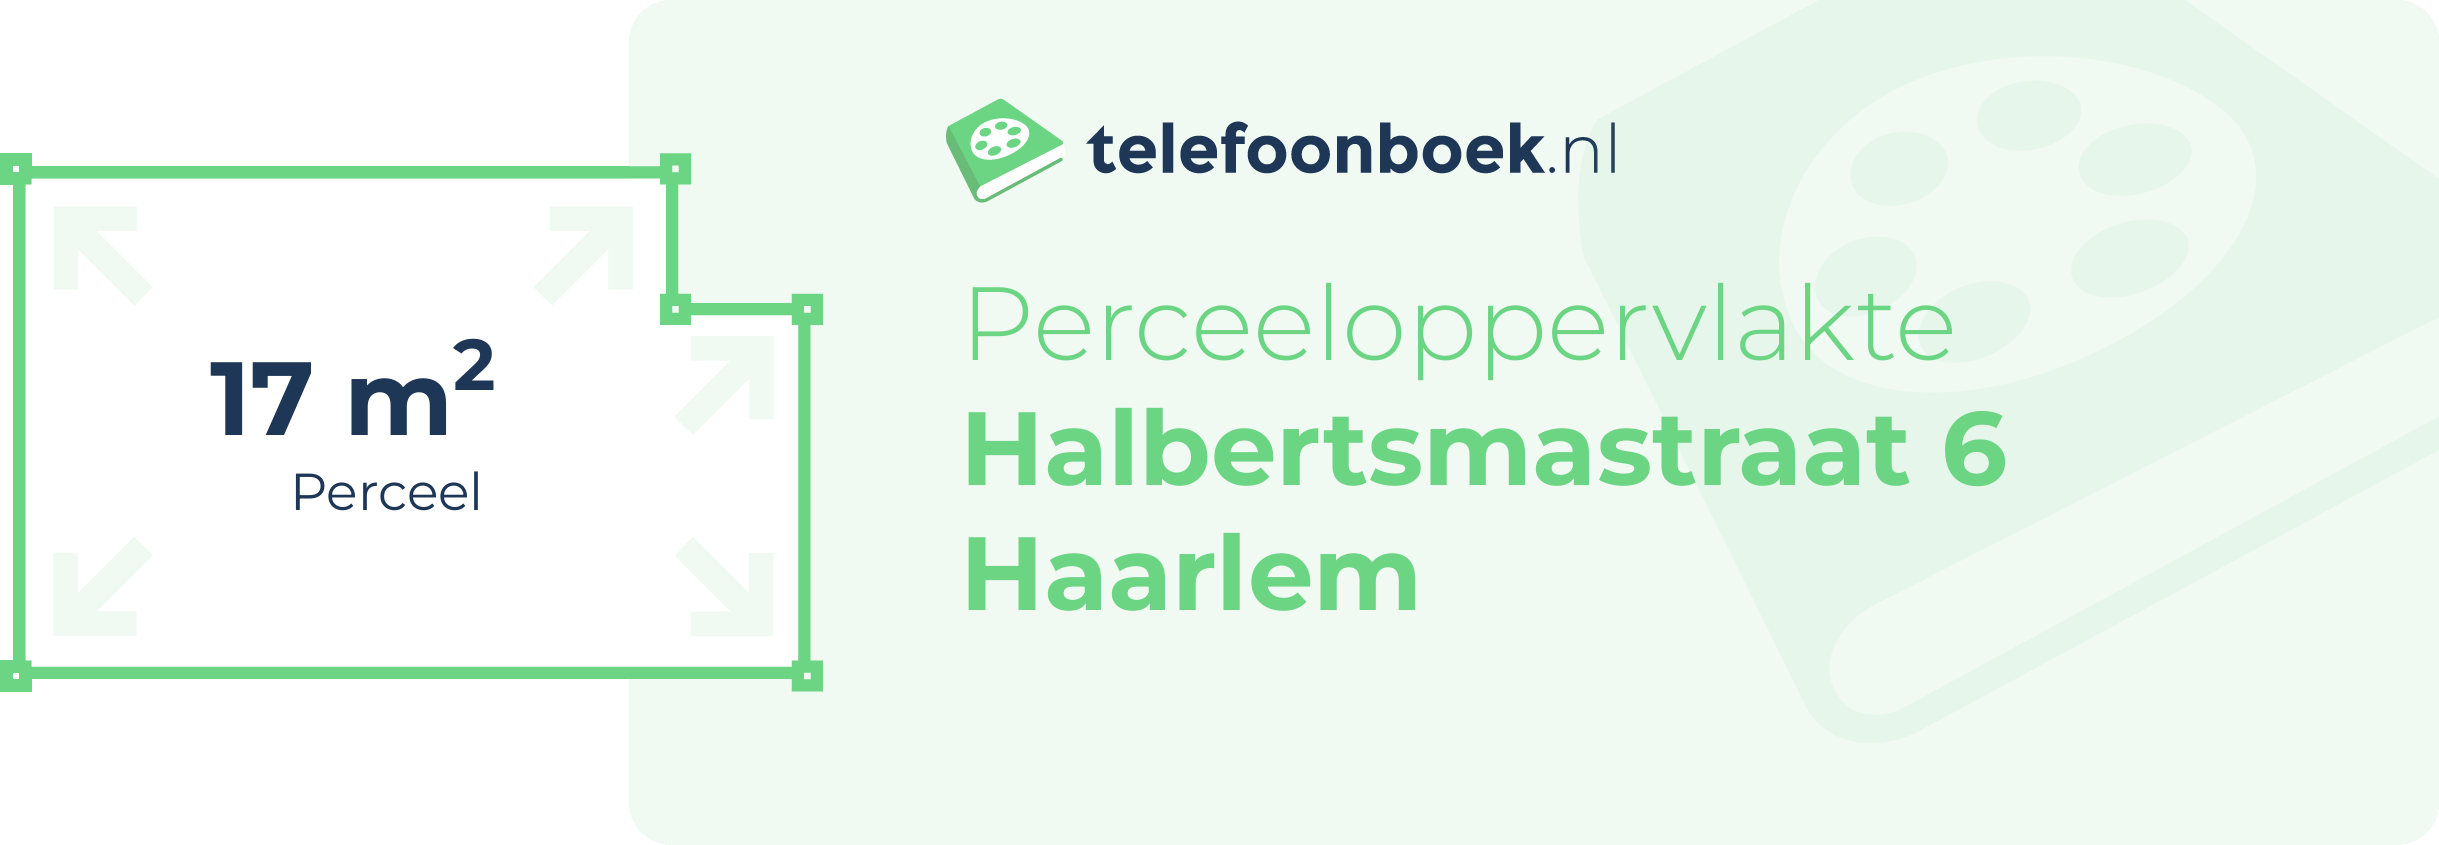 Perceeloppervlakte Halbertsmastraat 6 Haarlem